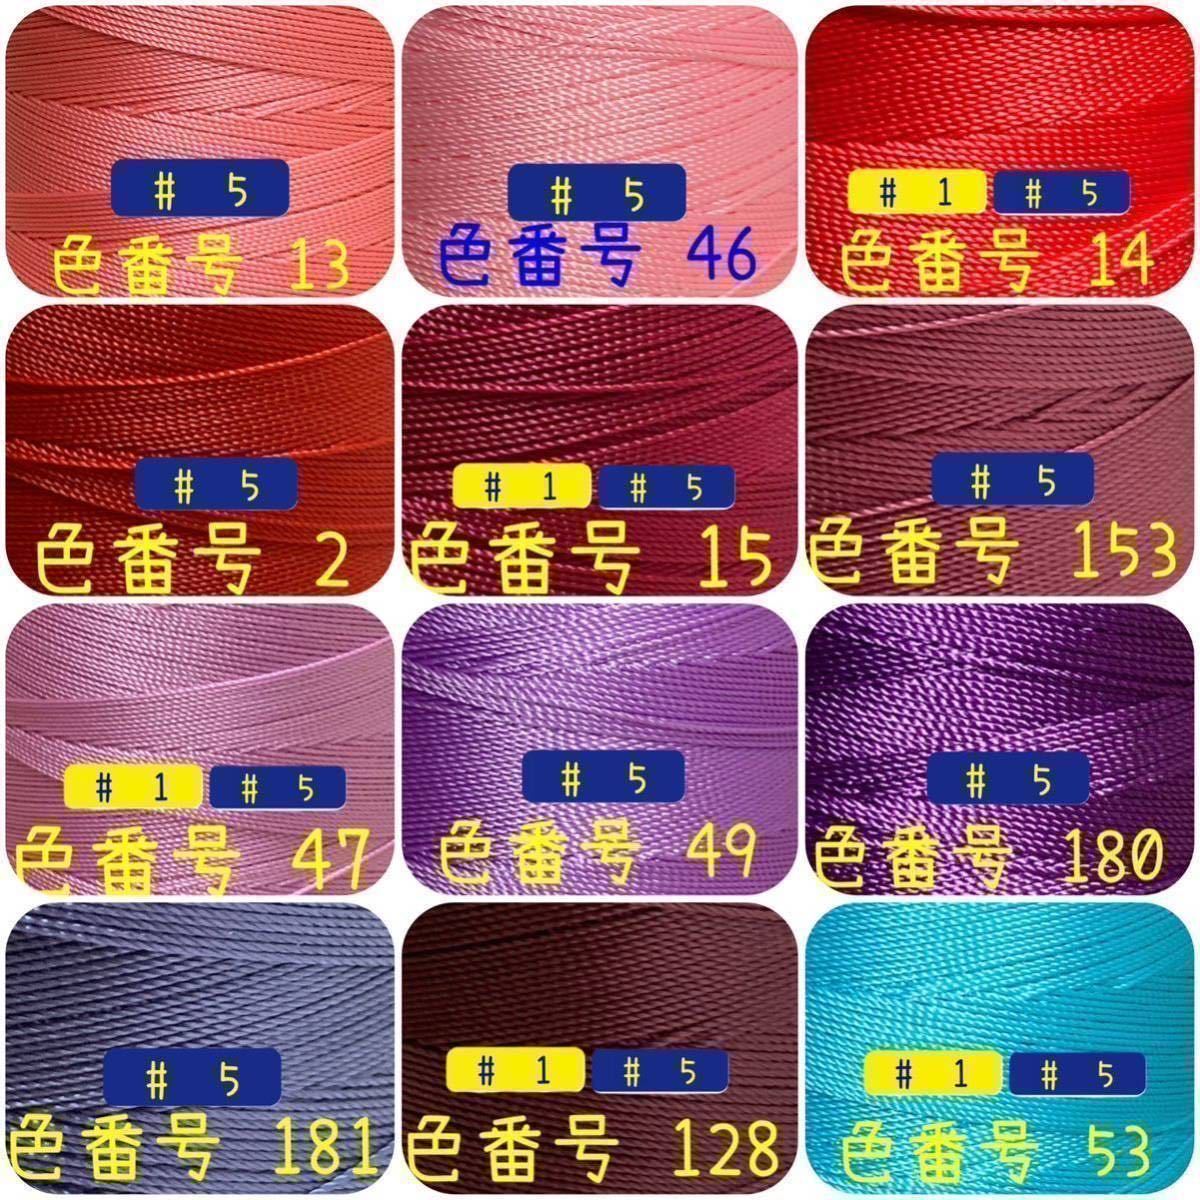 【3点普通郵便】ビニモMBT #1 #5 #8 レザークラフト手縫い糸_画像4